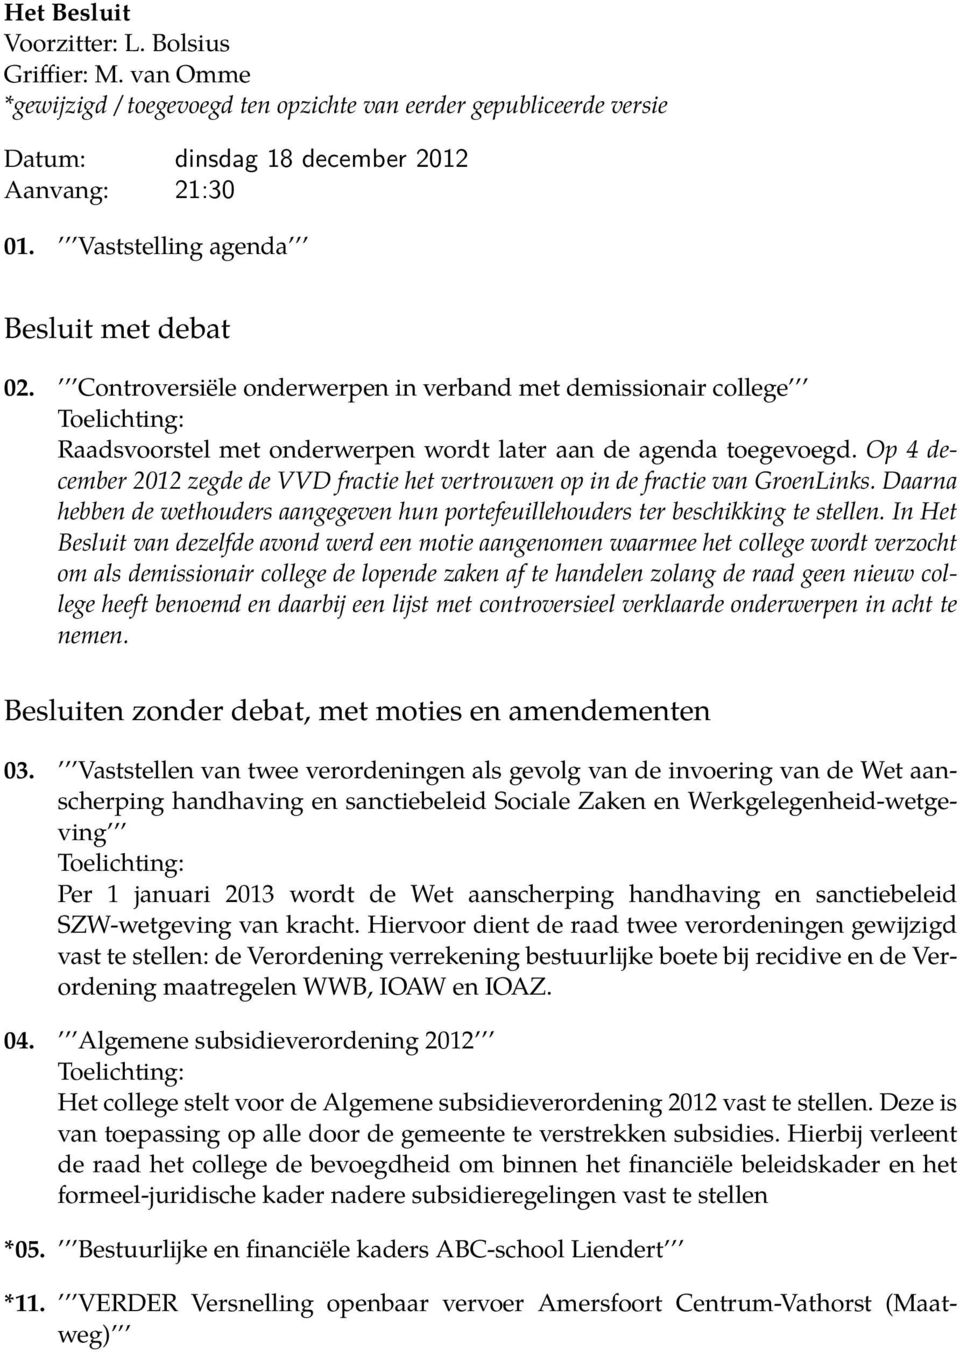 Op 4 december 2012 zegde de VVD fractie het vertrouwen op in de fractie van GroenLinks. Daarna hebben de wethouders aangegeven hun portefeuillehouders ter beschikking te stellen.